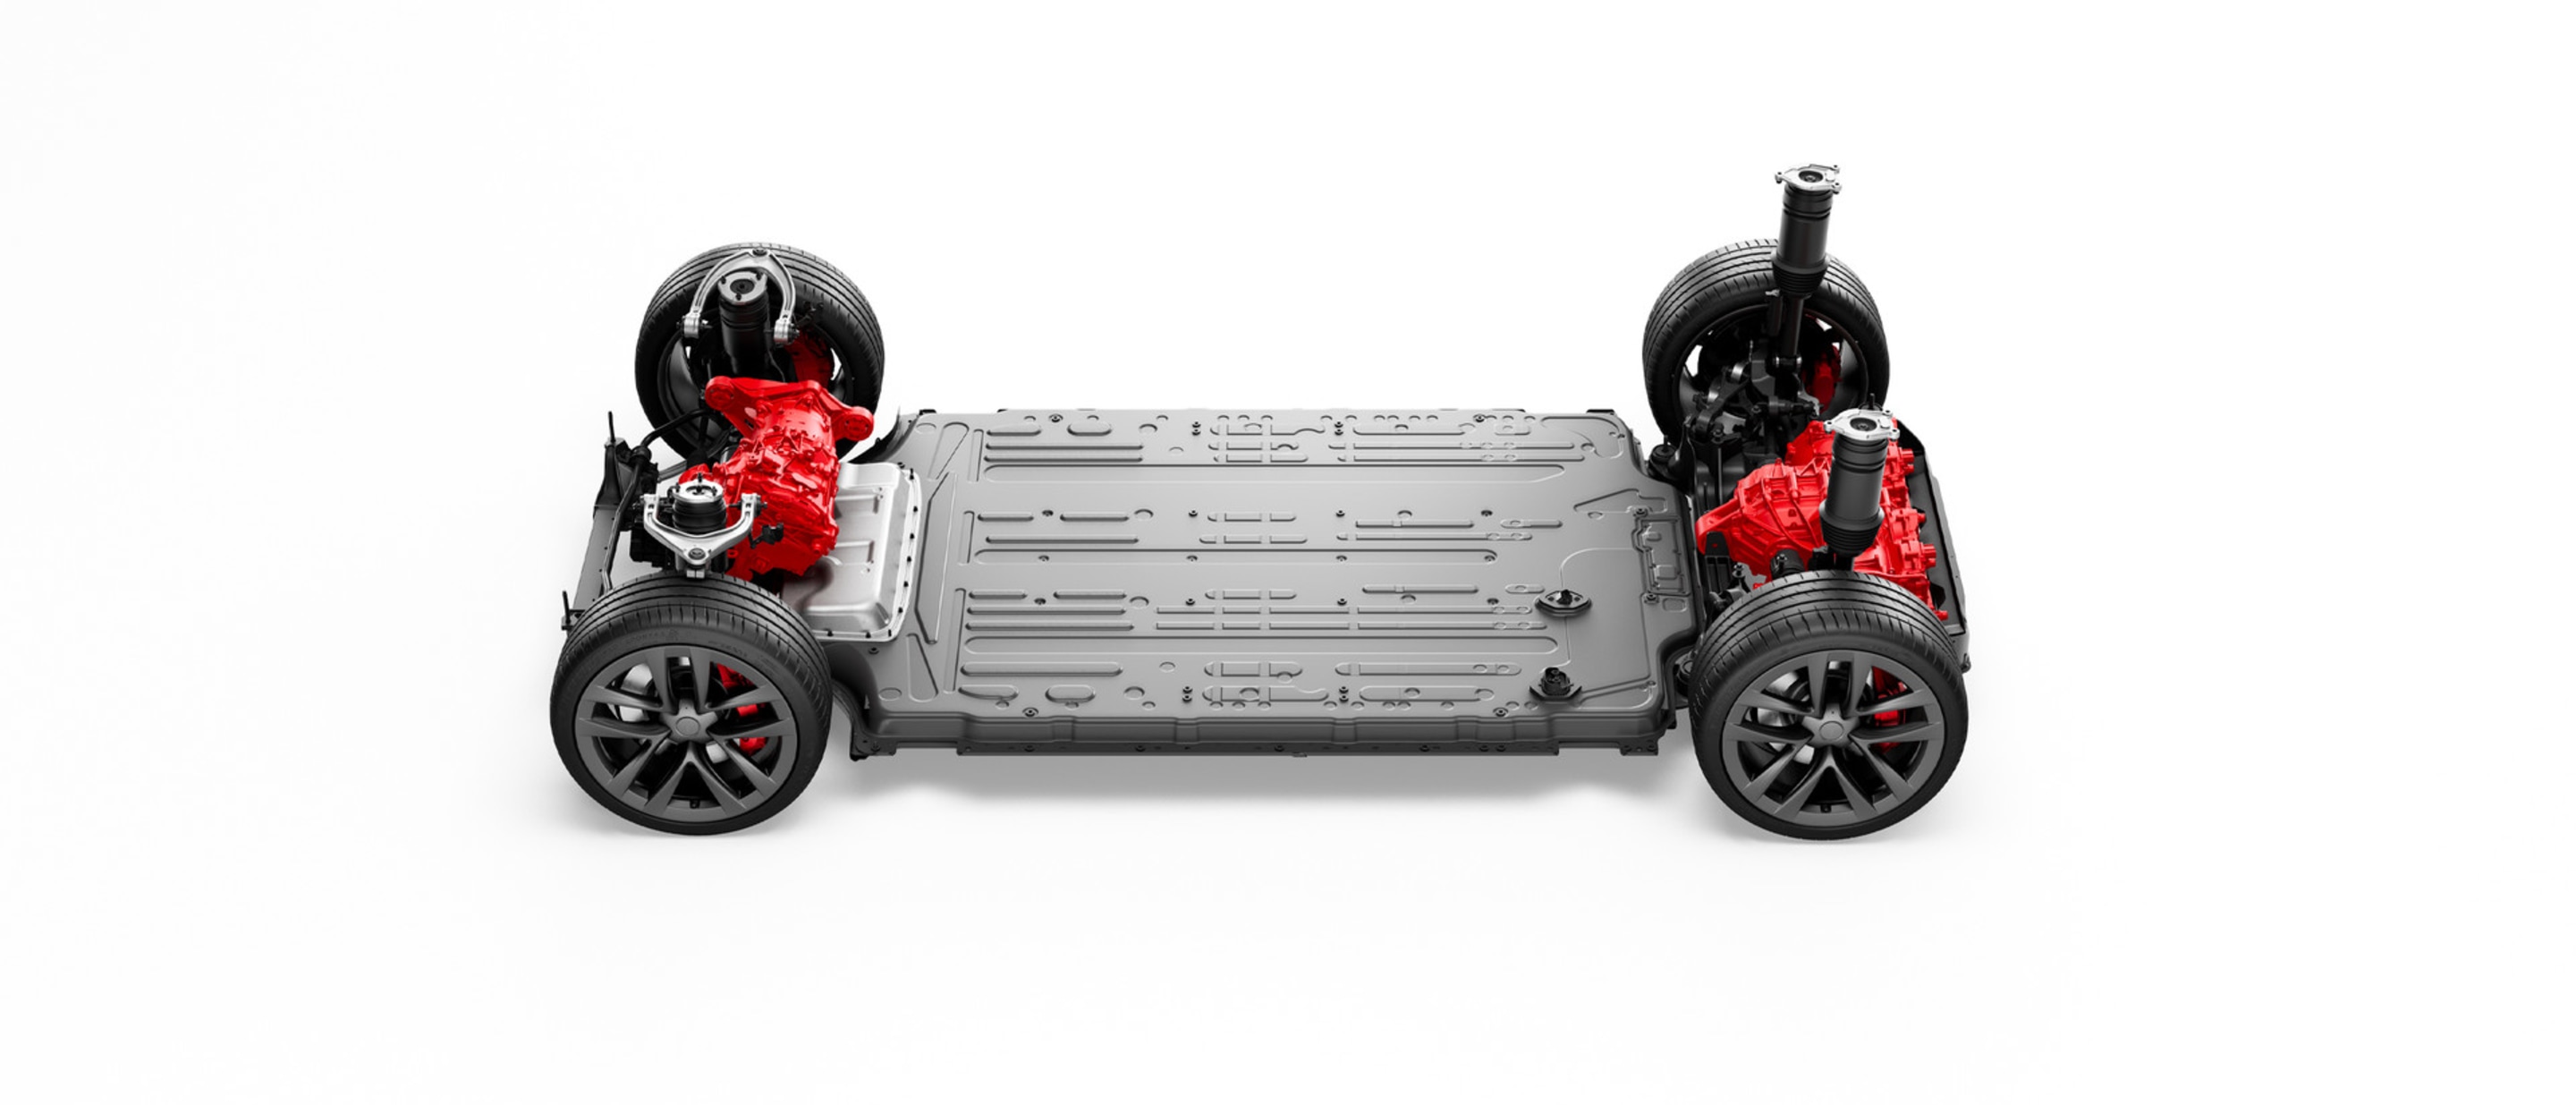 Model S Motor Triplo tração integral